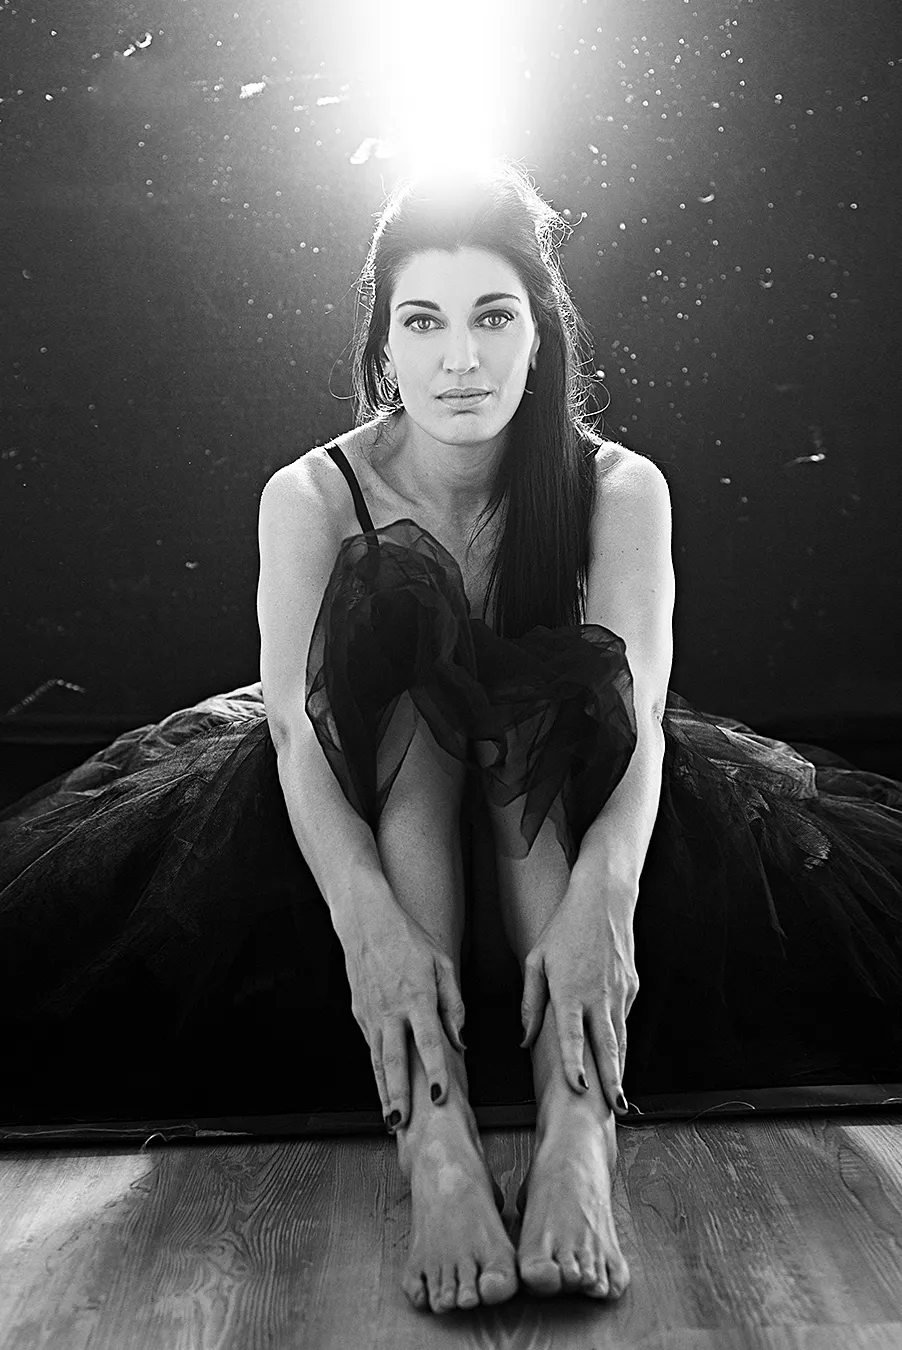 ritratto di donna con gonna in tulle, seduta per terra, fotografia professionale in bianco e nero, federica nardese fotografa di ritratto a milano